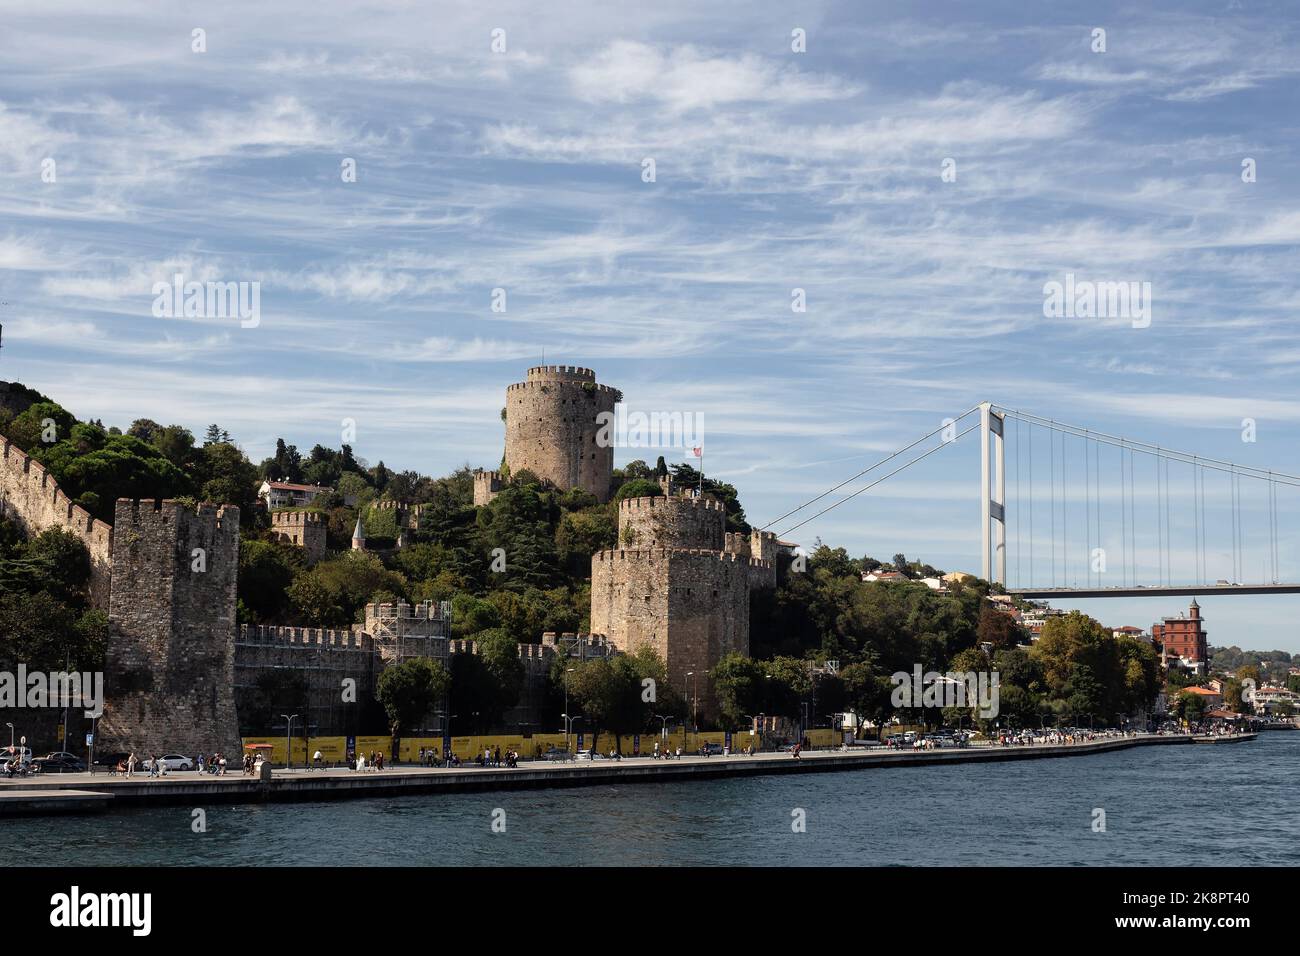 Blick auf Menschen, die am Bosporus, der historischen Festung Rumeli Hisari und der FSM-Brücke in Istanbul, vorbei gehen. Es ist ein sonniger Sommertag. Schöne Reise s Stockfoto